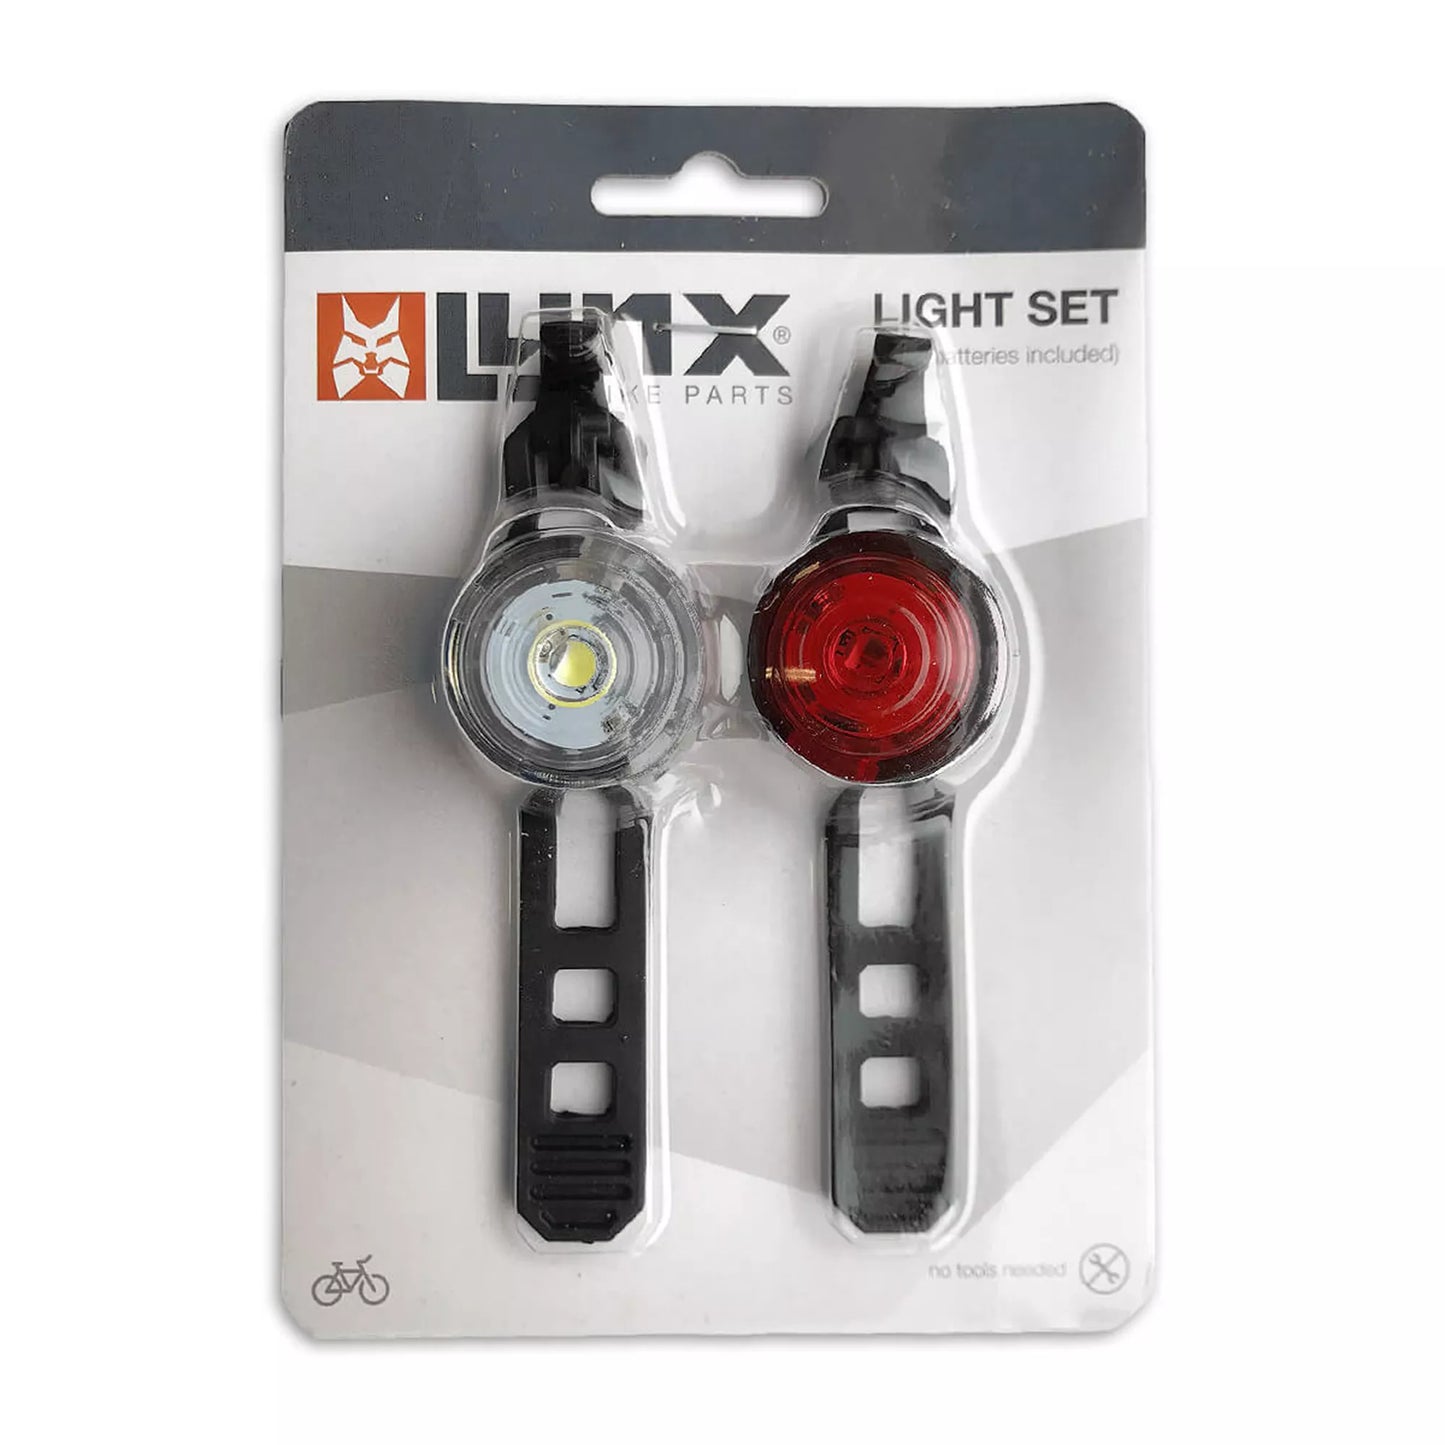 Fietsverlichting Lynx Voorlicht en Achterlicht - Wit en Rood - LED kopen